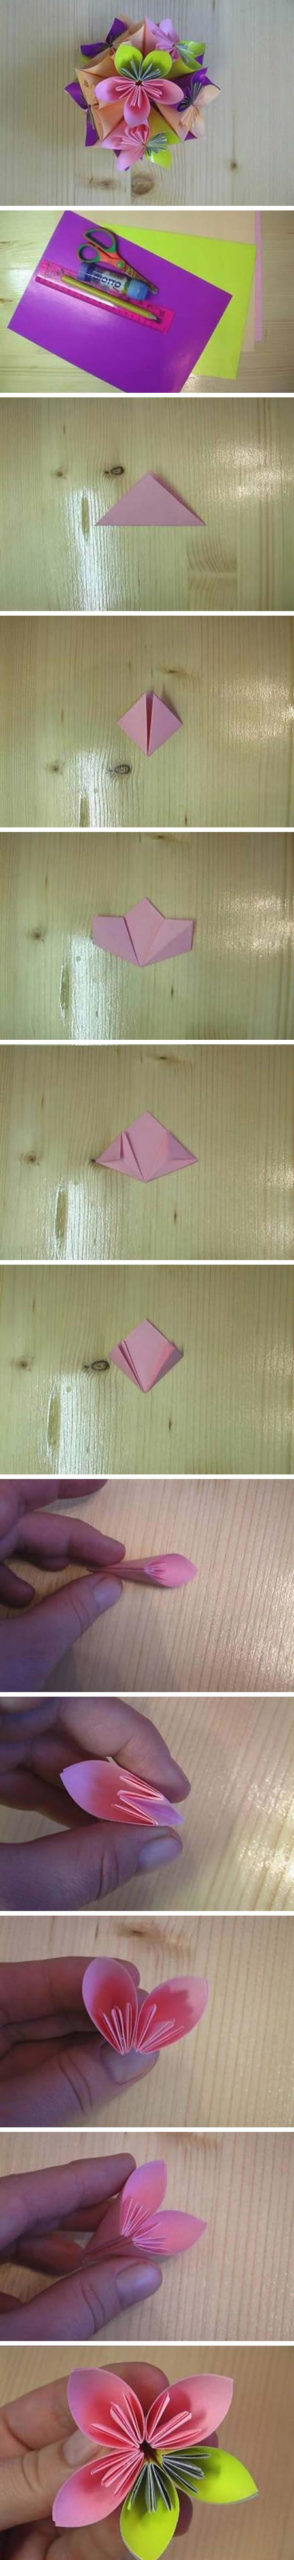 Origami com papel